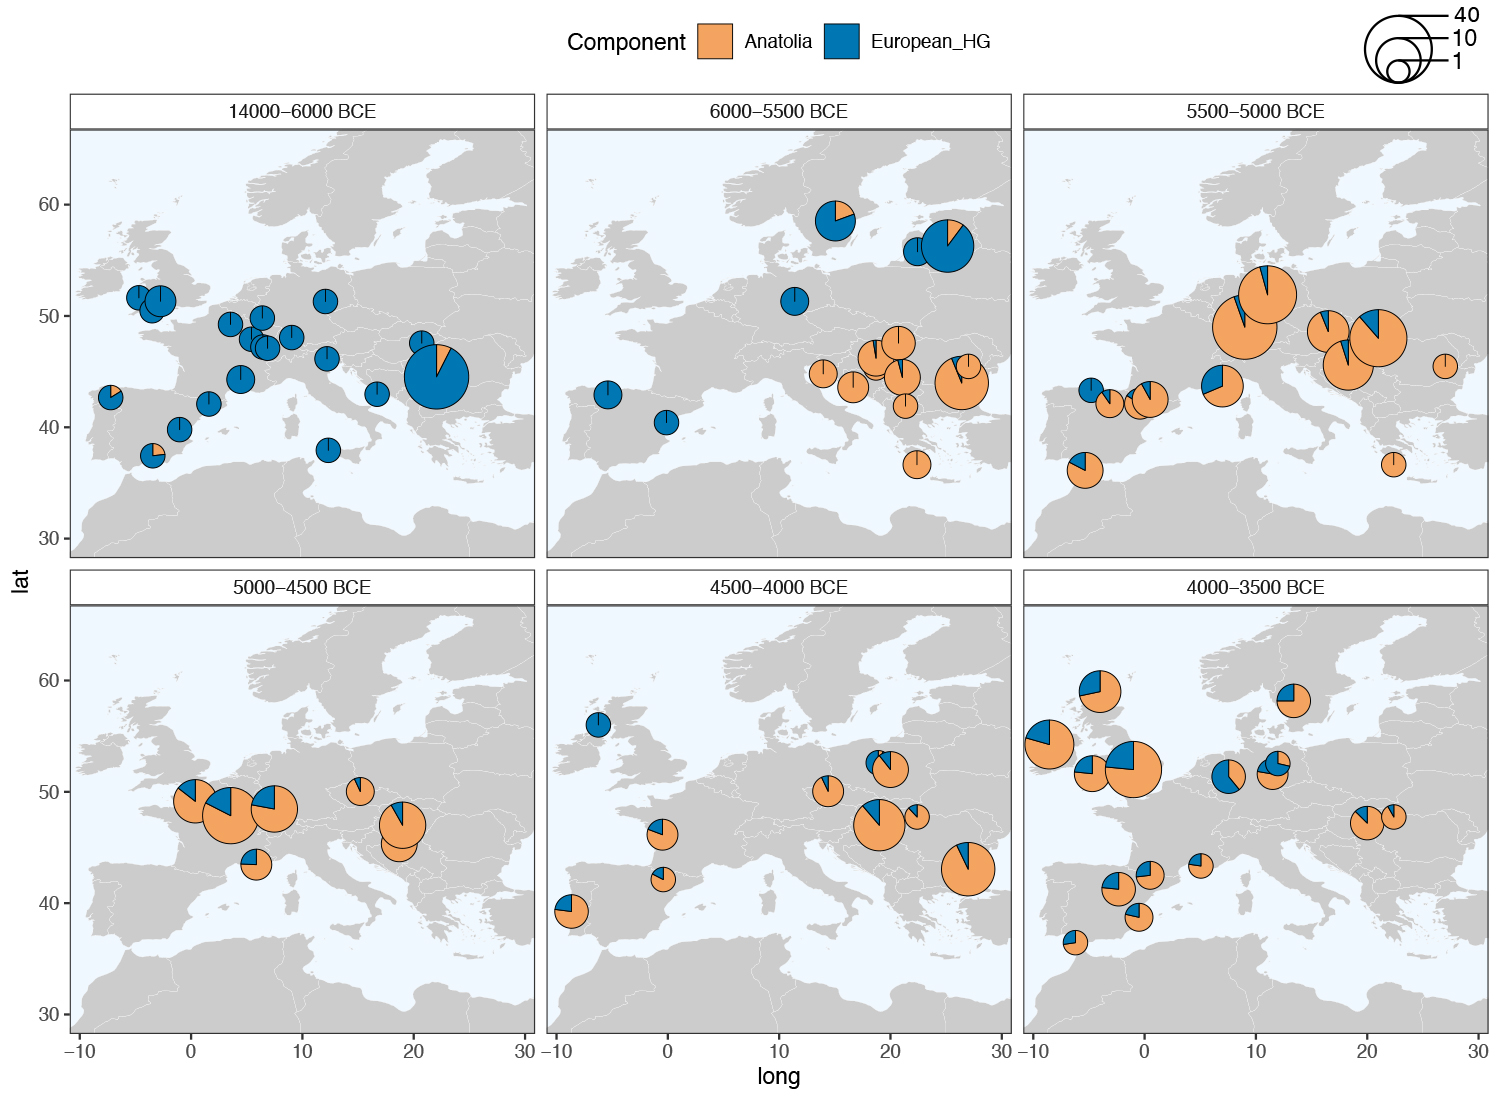 Cartes montrant la proportion des composantes génétiques caractéristiques des populations de chasseurs-cueilleurs (bleu) et des groupes néolithiques d’Anatolie (orange) au cours du temps